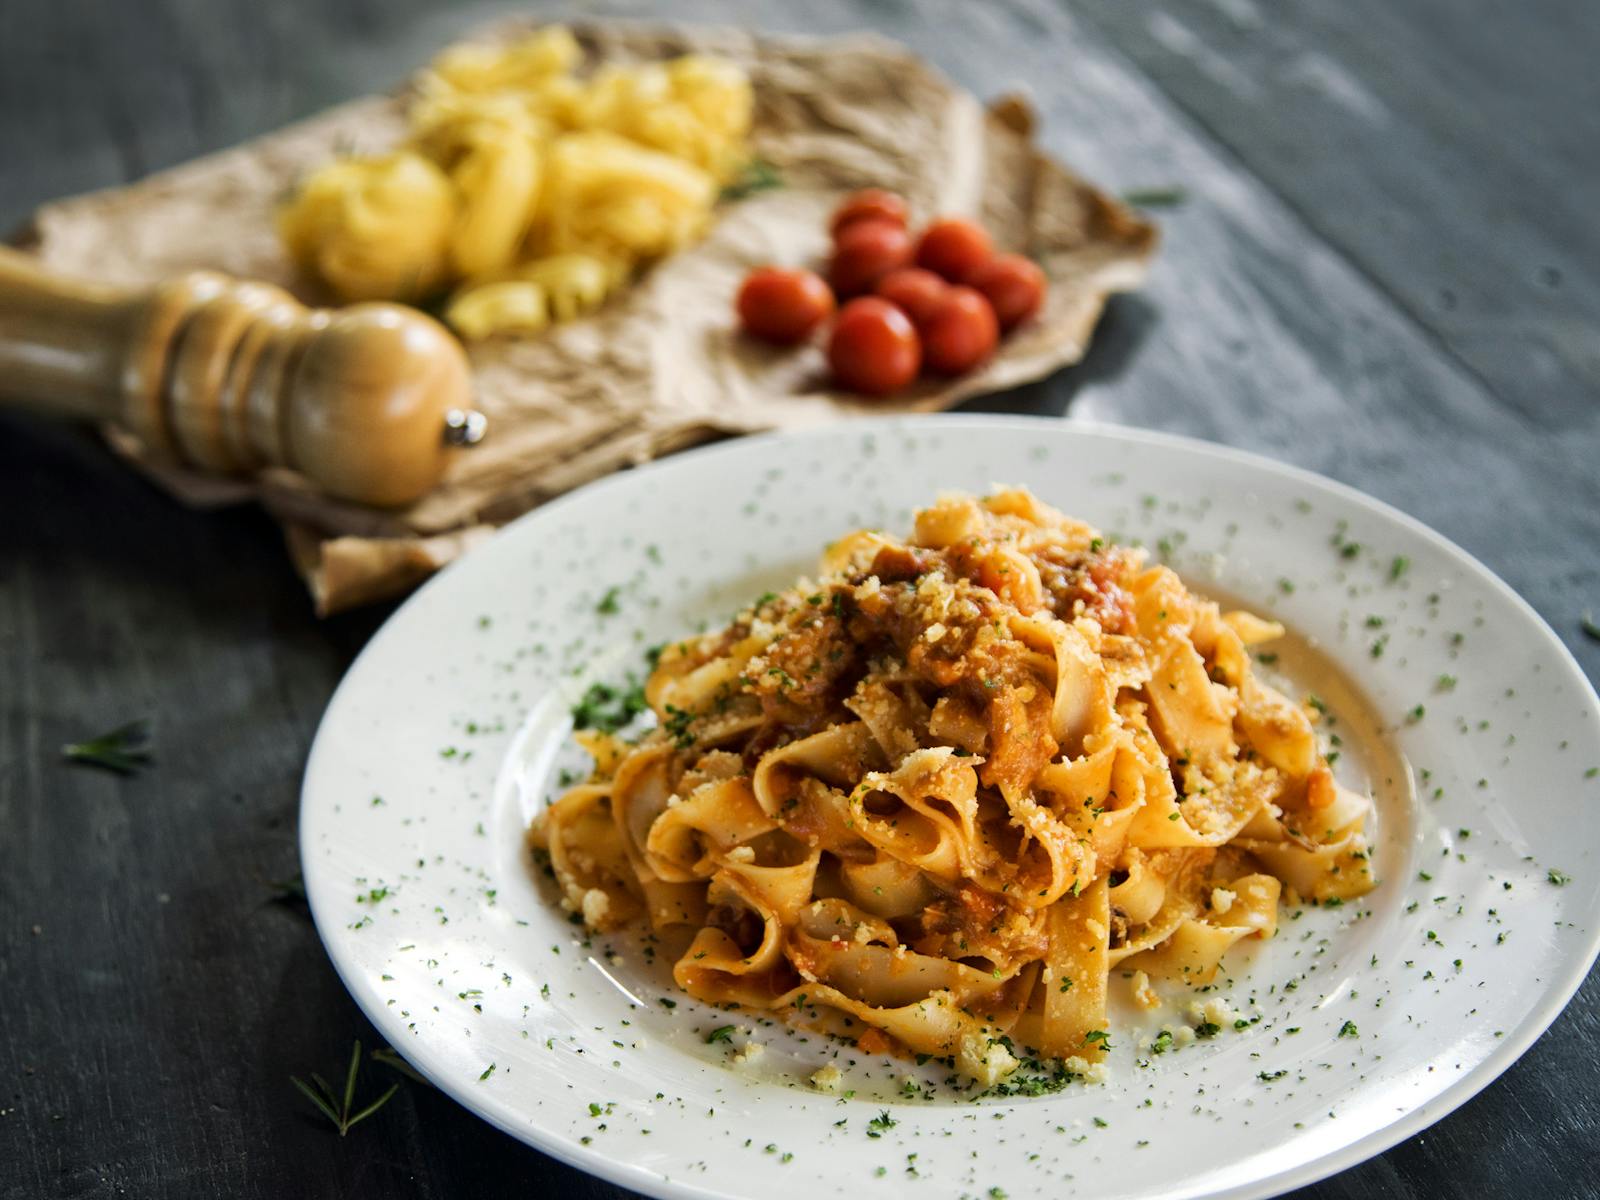 Image for Italian Festival Dinner